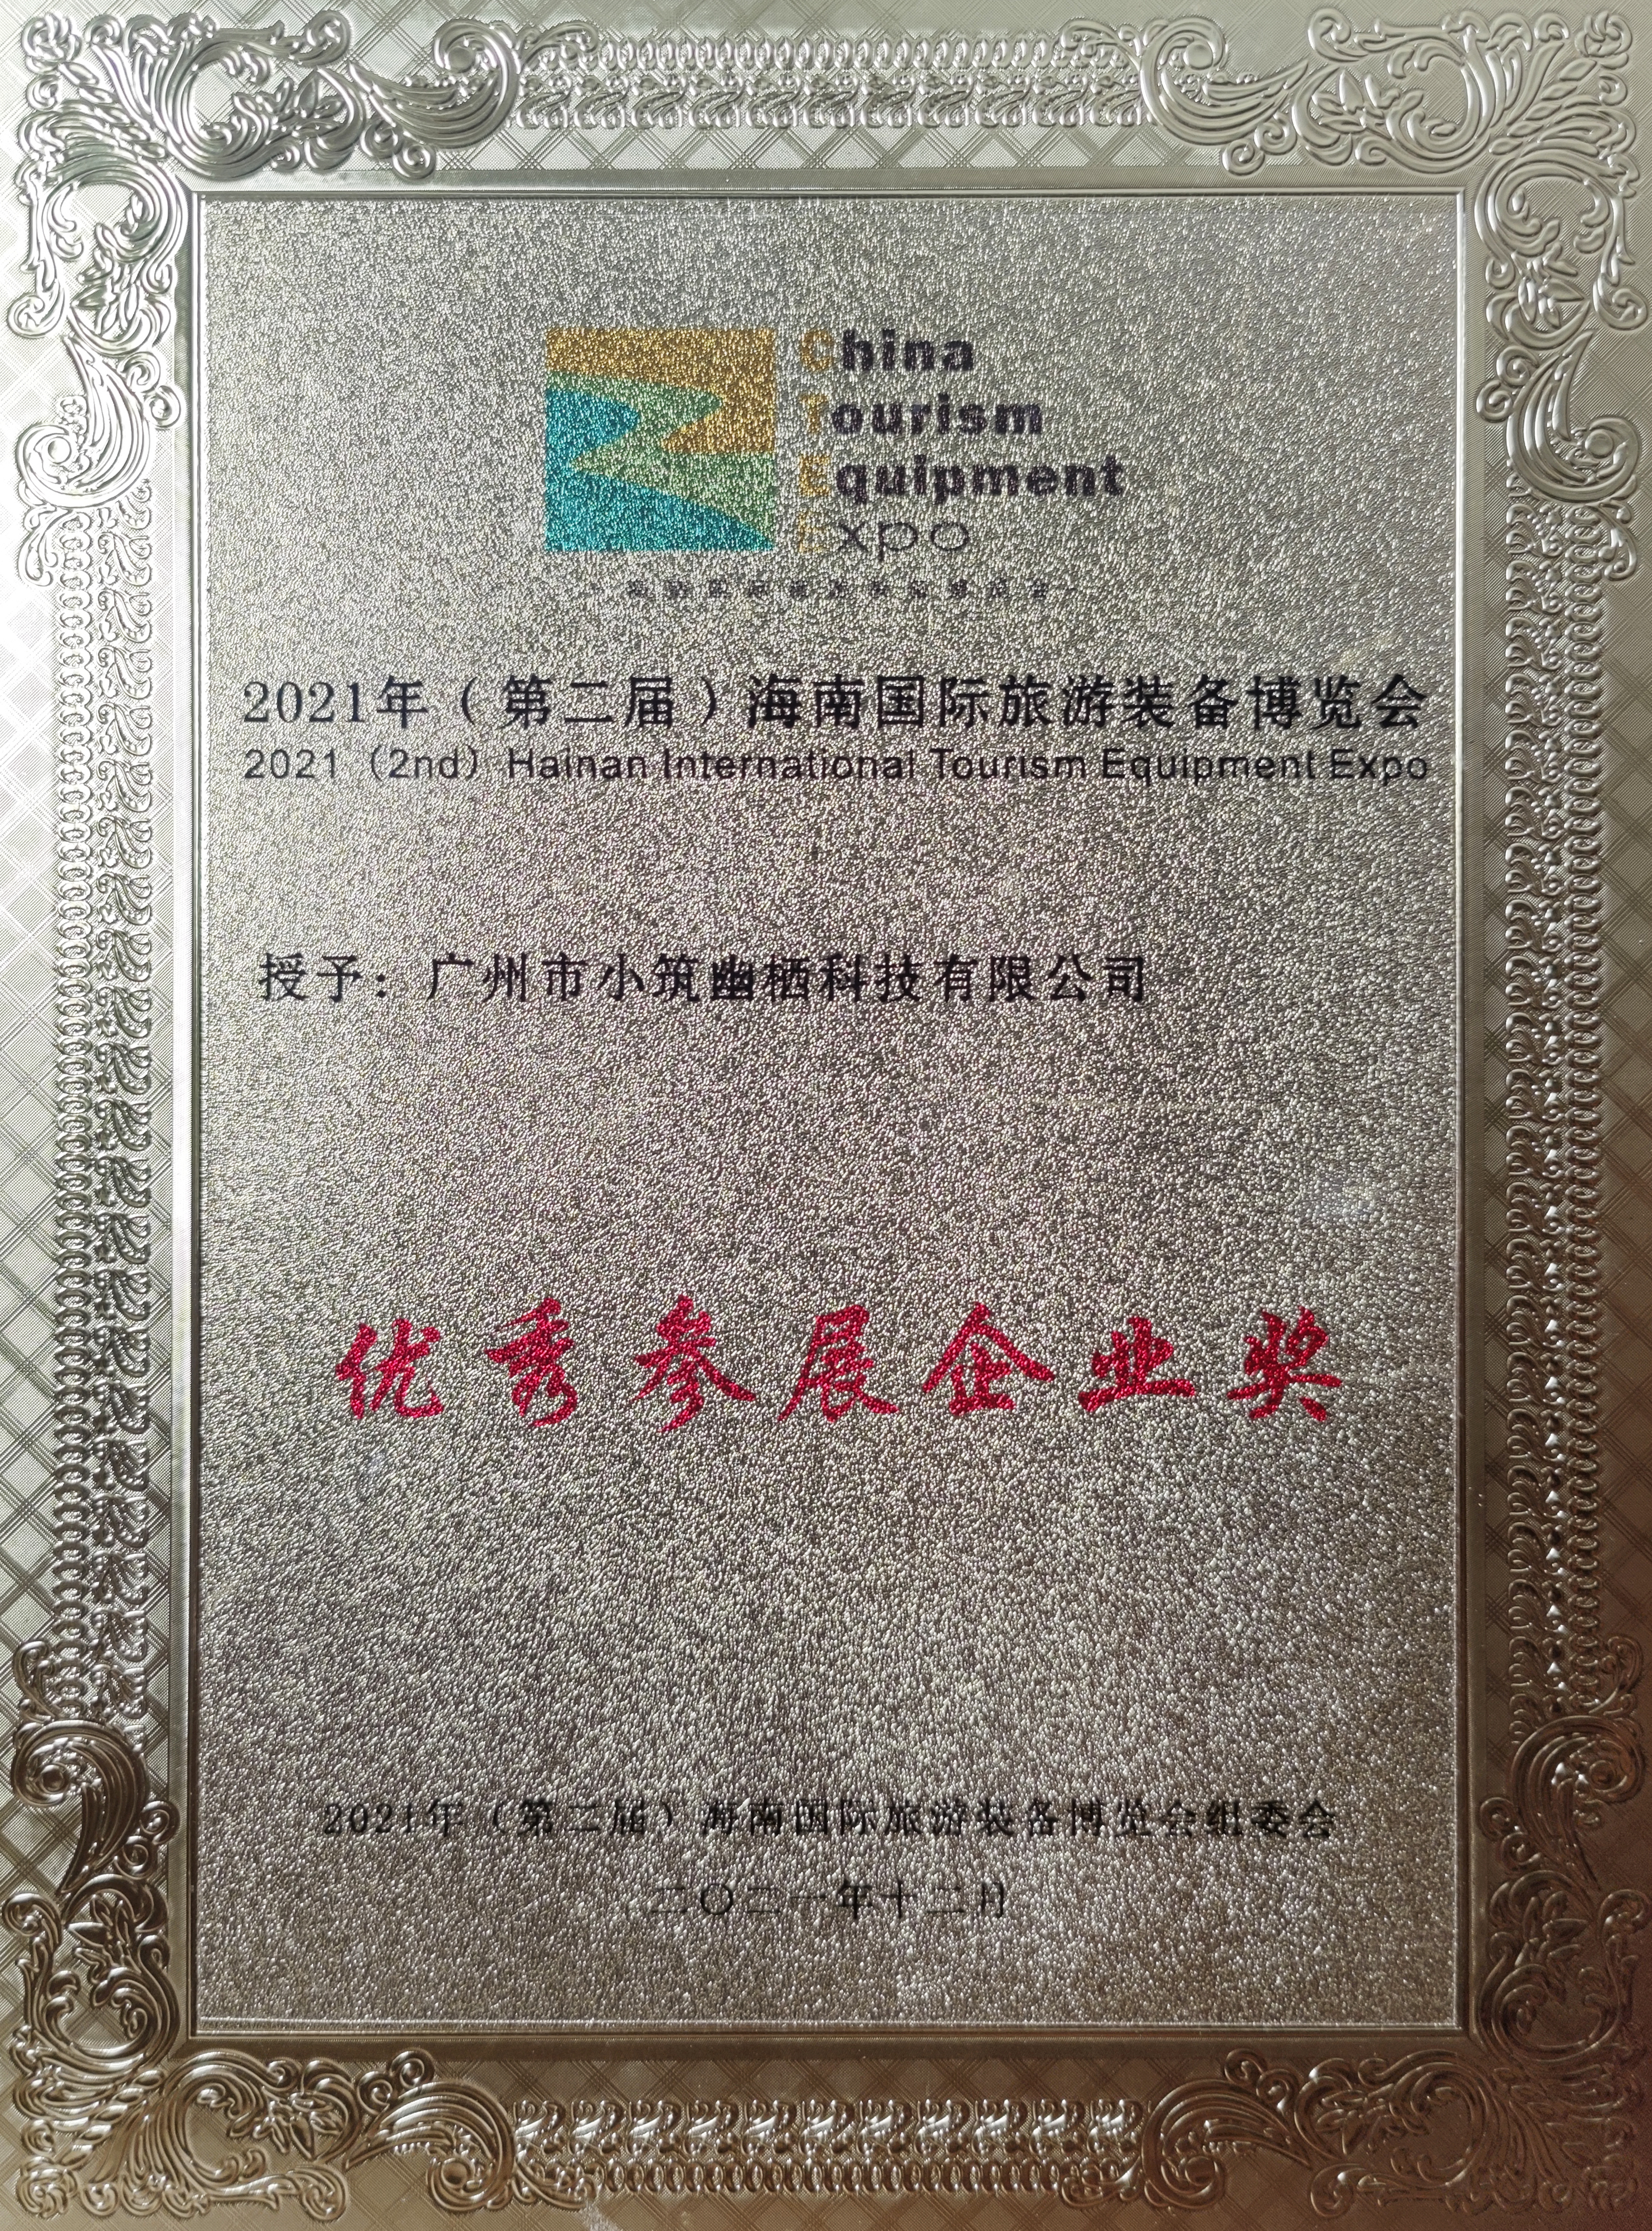 certificat d'honneur (1)